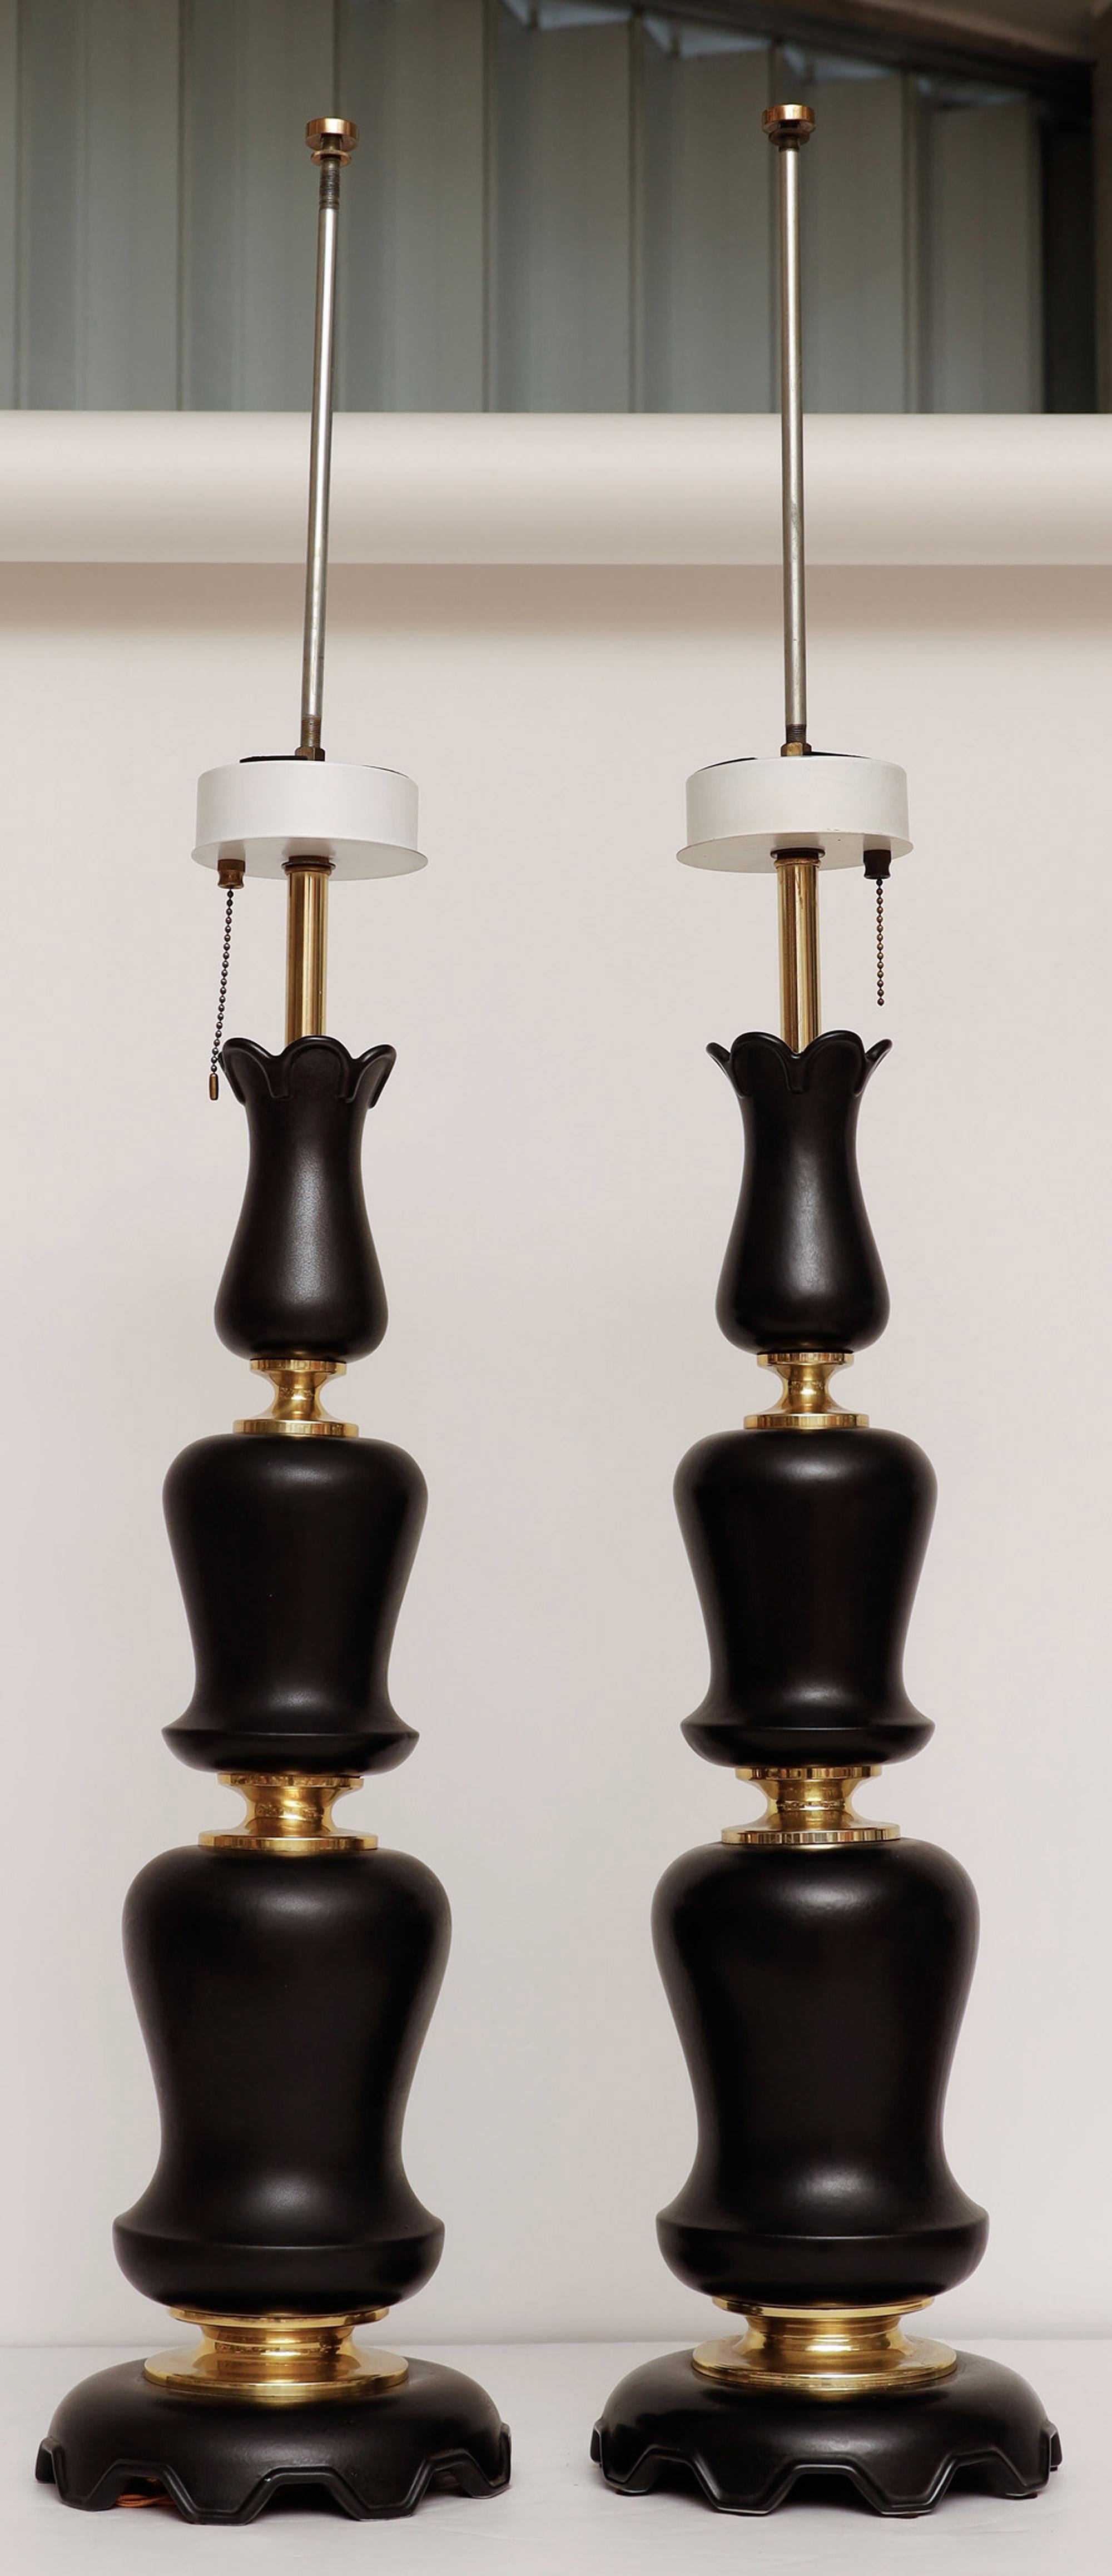 Paire de lampes de table sculpturales en céramique noire mate par Gerald Thurston pour Lightolier.
Les lampes ont chacune trois sources lumineuses et une chaîne de traction.

Très grand et élégant !